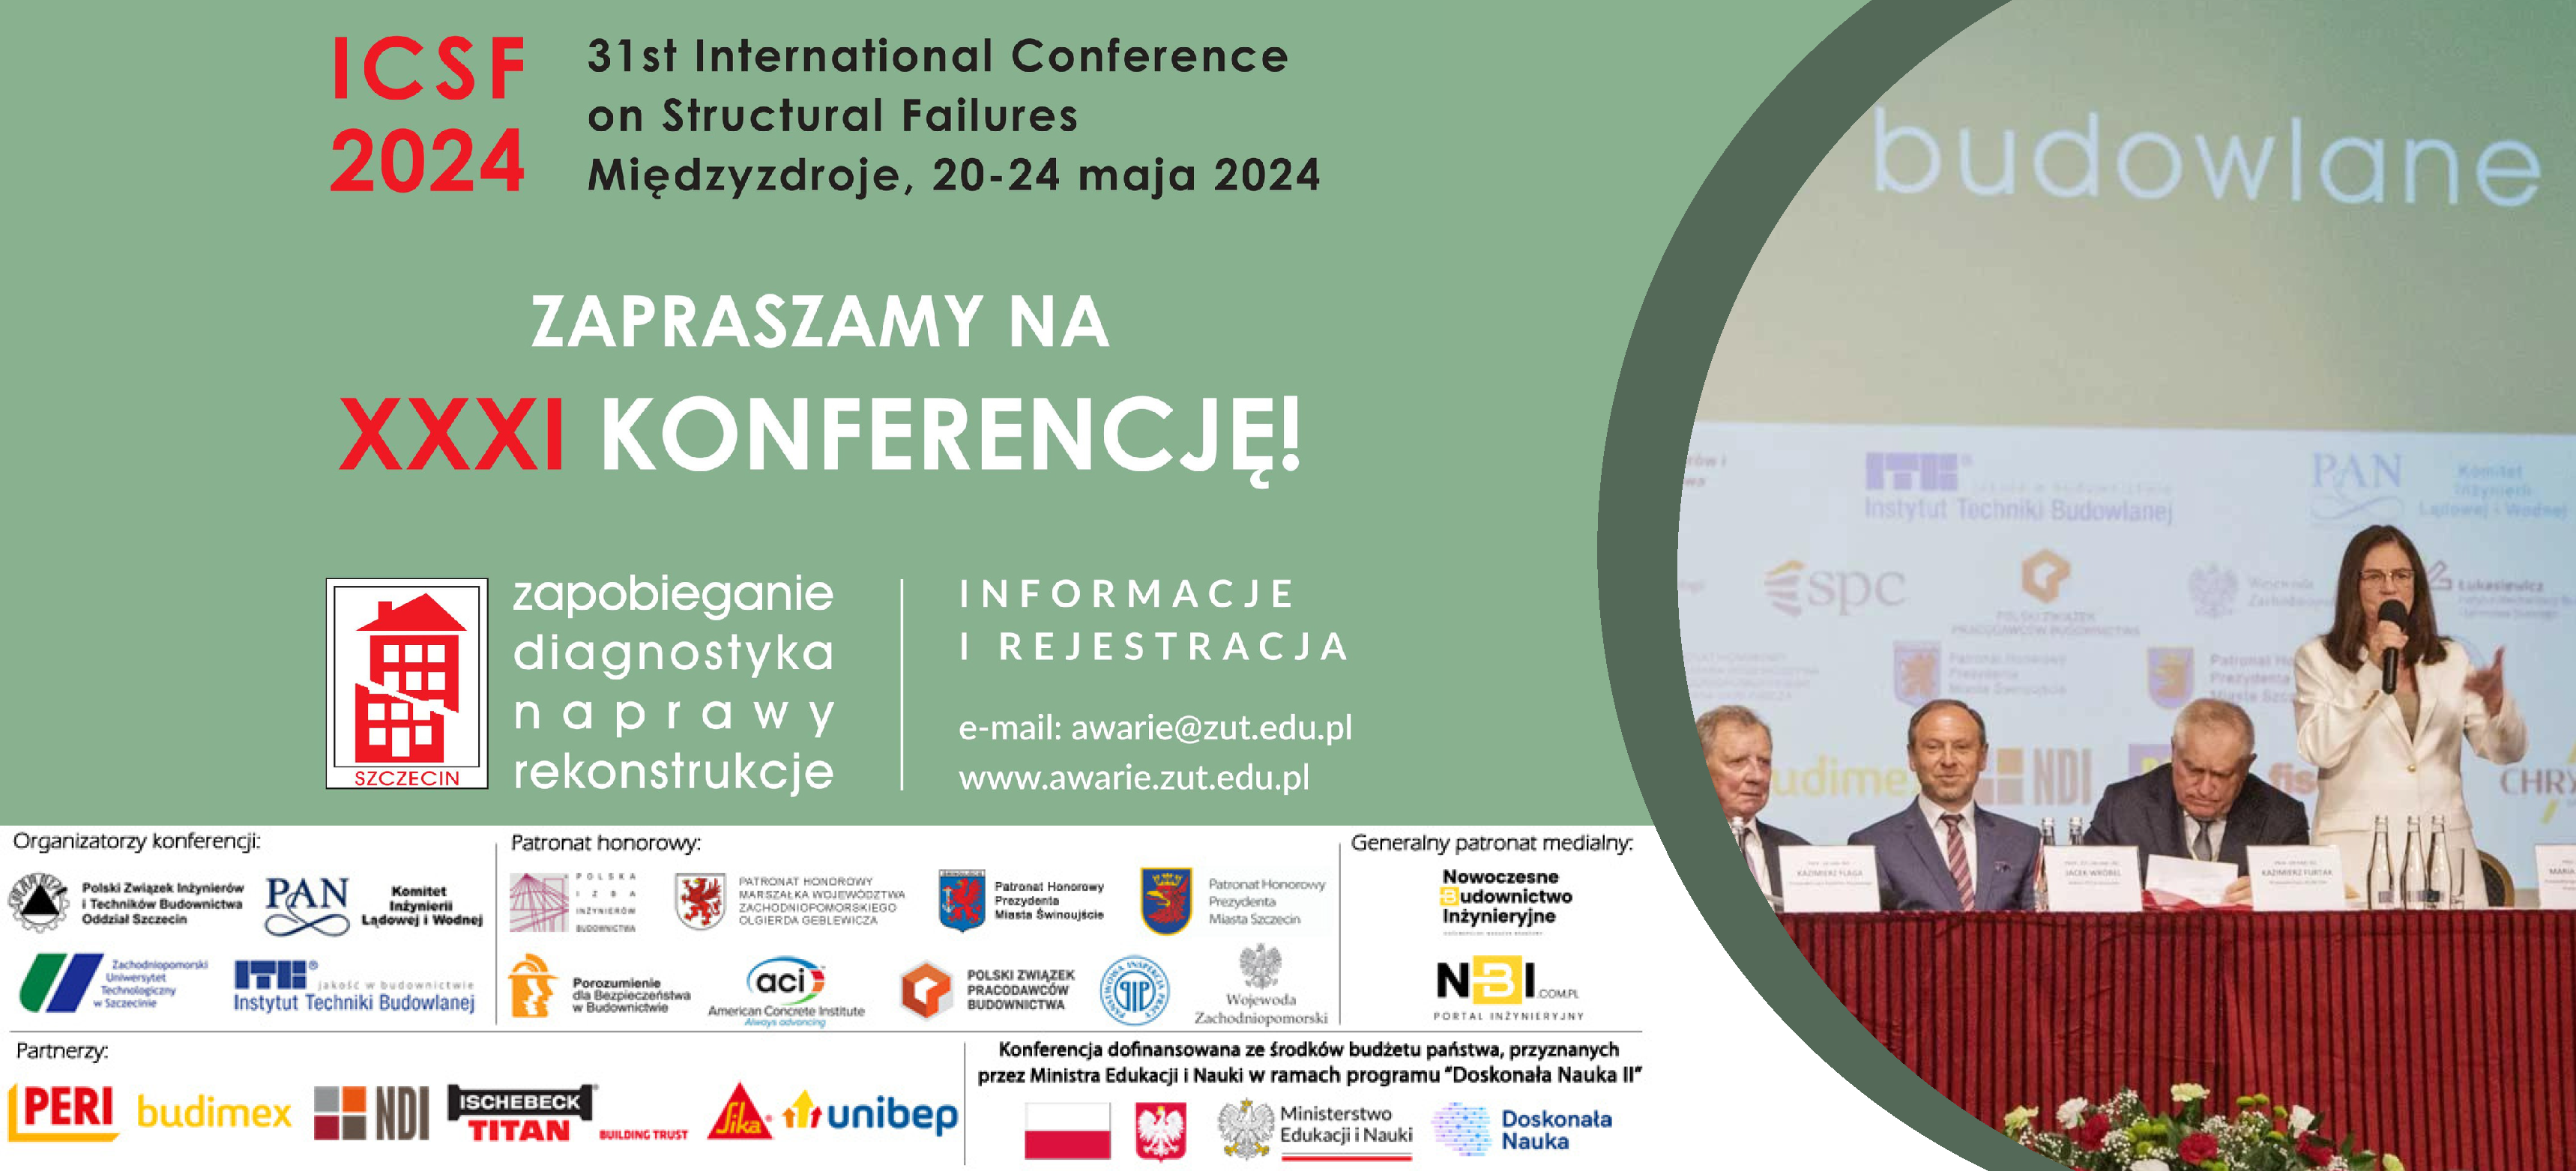 XXXI Międzynarodowa Konferencja Naukowo-Techniczna Awarie Budowlane – ICSF 2024 odbędzie się w dniach 20-24 maja 2024 roku w Międzyzdrojach